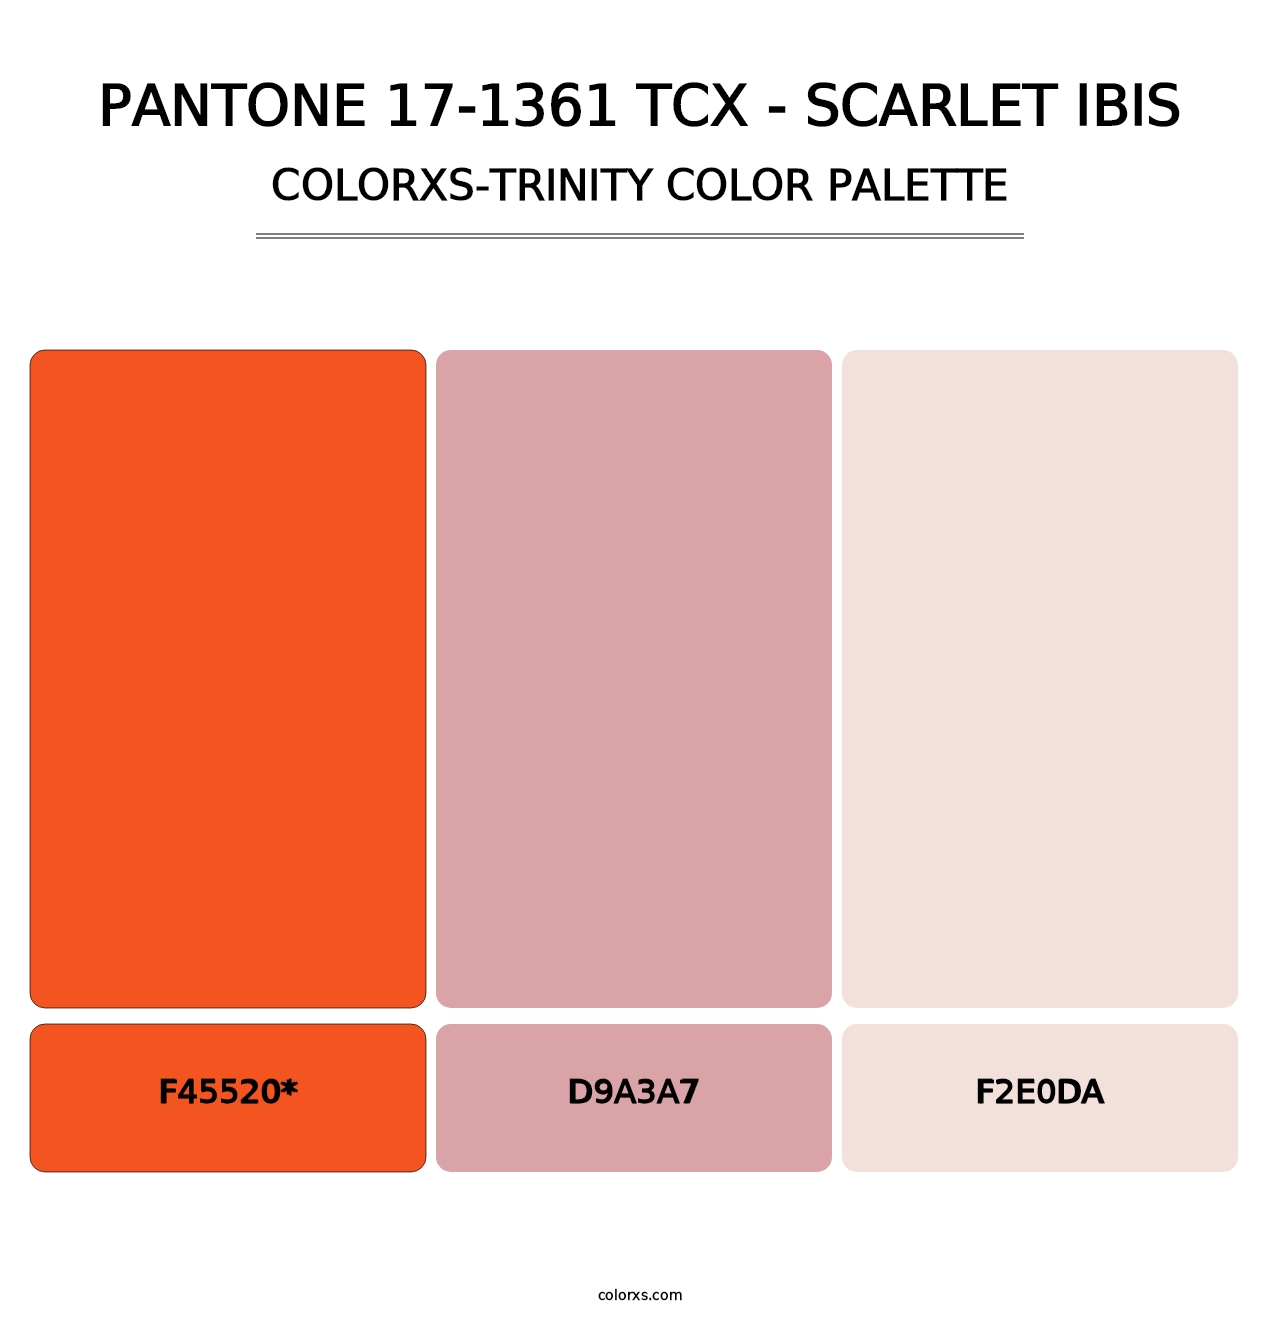 PANTONE 17-1361 TCX - Scarlet Ibis - Colorxs Trinity Palette